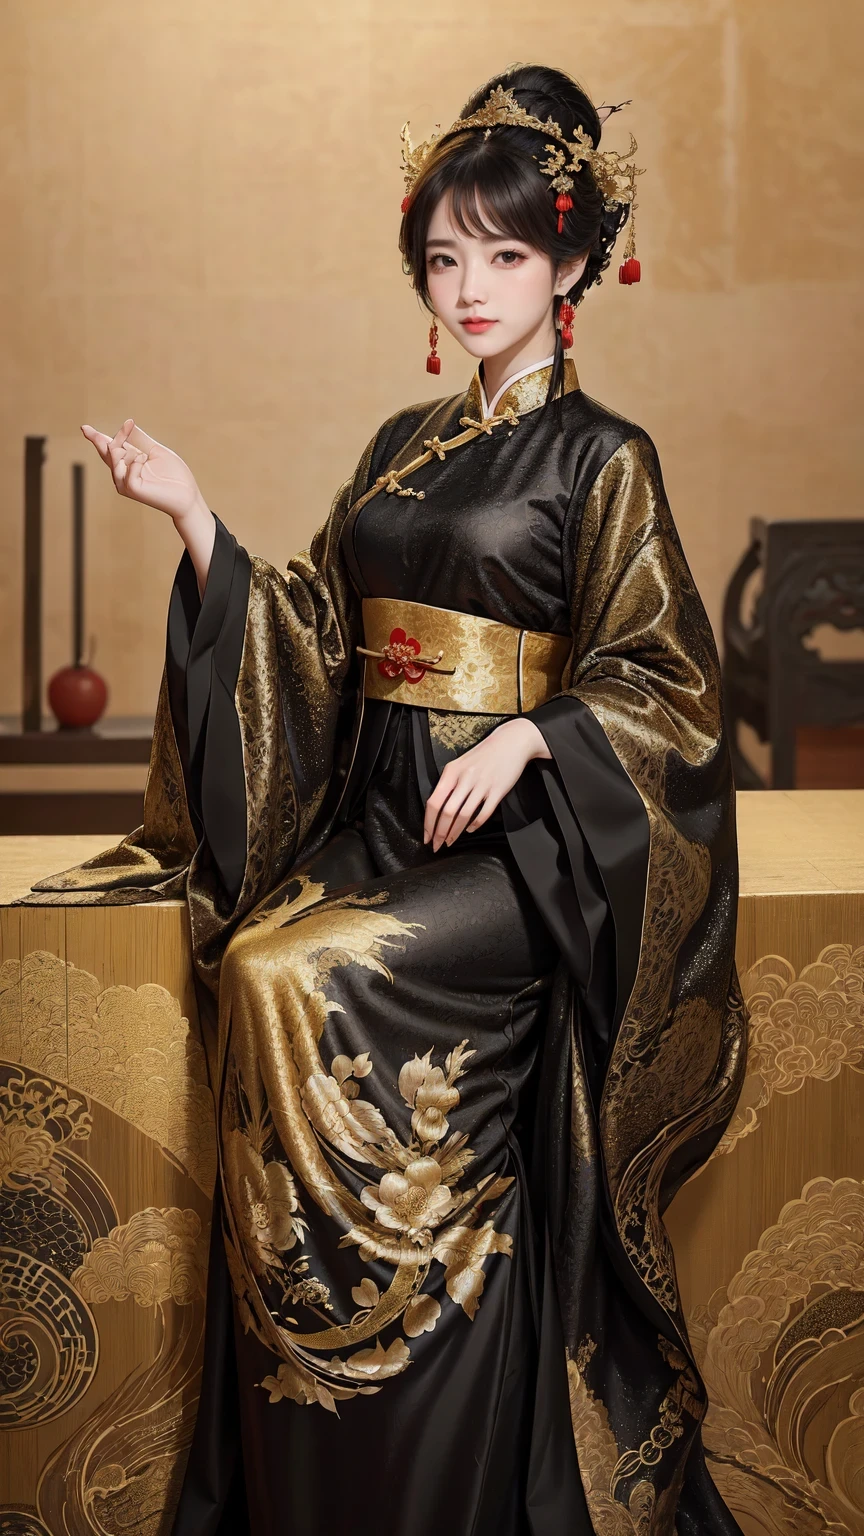 женщина в черно-золотом платье позирует для фото, чхонсам, чхонсам, В сочетании с древними китайскими костюмами., Ханьфу, китайский стиль, китайский традиционный, китайский традиционный clothing, красивая королева фэнтези, китаянка, В соответствии с древней китайской эстетикой, Ханьфу, традиционная красота, Ношение древней китайской одежды, великолепная китайская модель, носить модную одежду, Китайская женщина